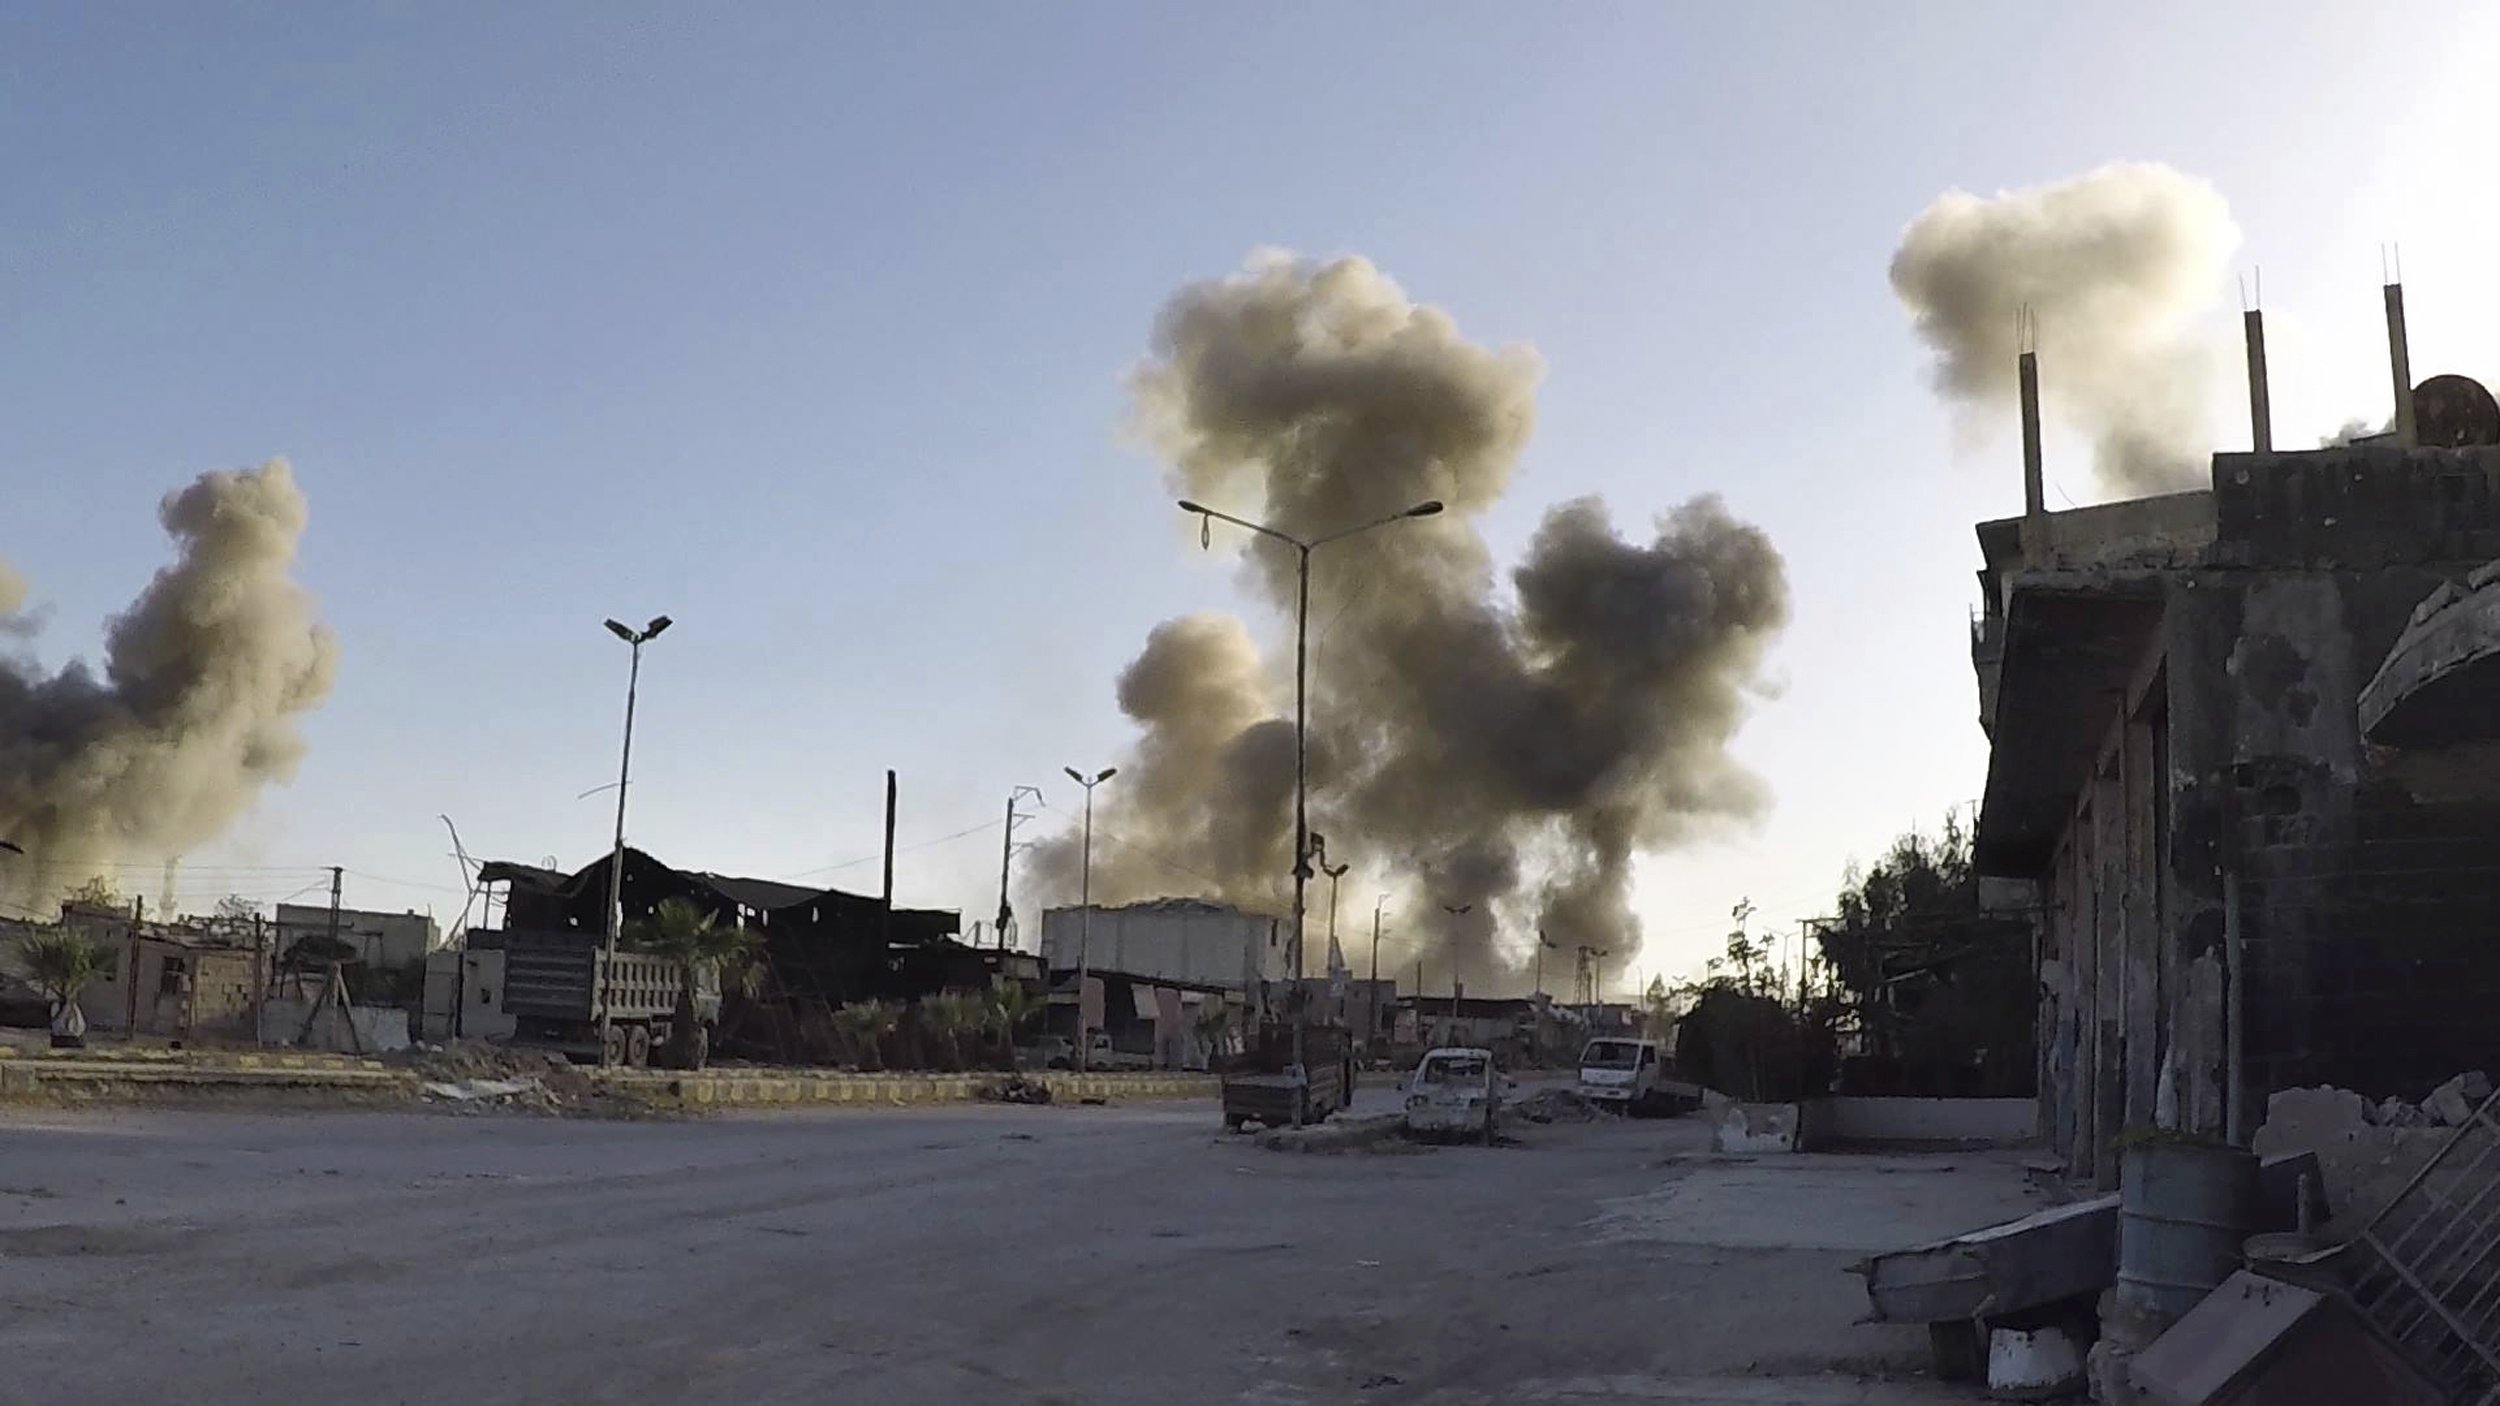 جنگنده های رژیم صهیونیستی 20 فرودین با تجاوز از مرز هوایی لبنان و سوریه، پایگاه هوایی T4 سوریه را بمباران کردند.